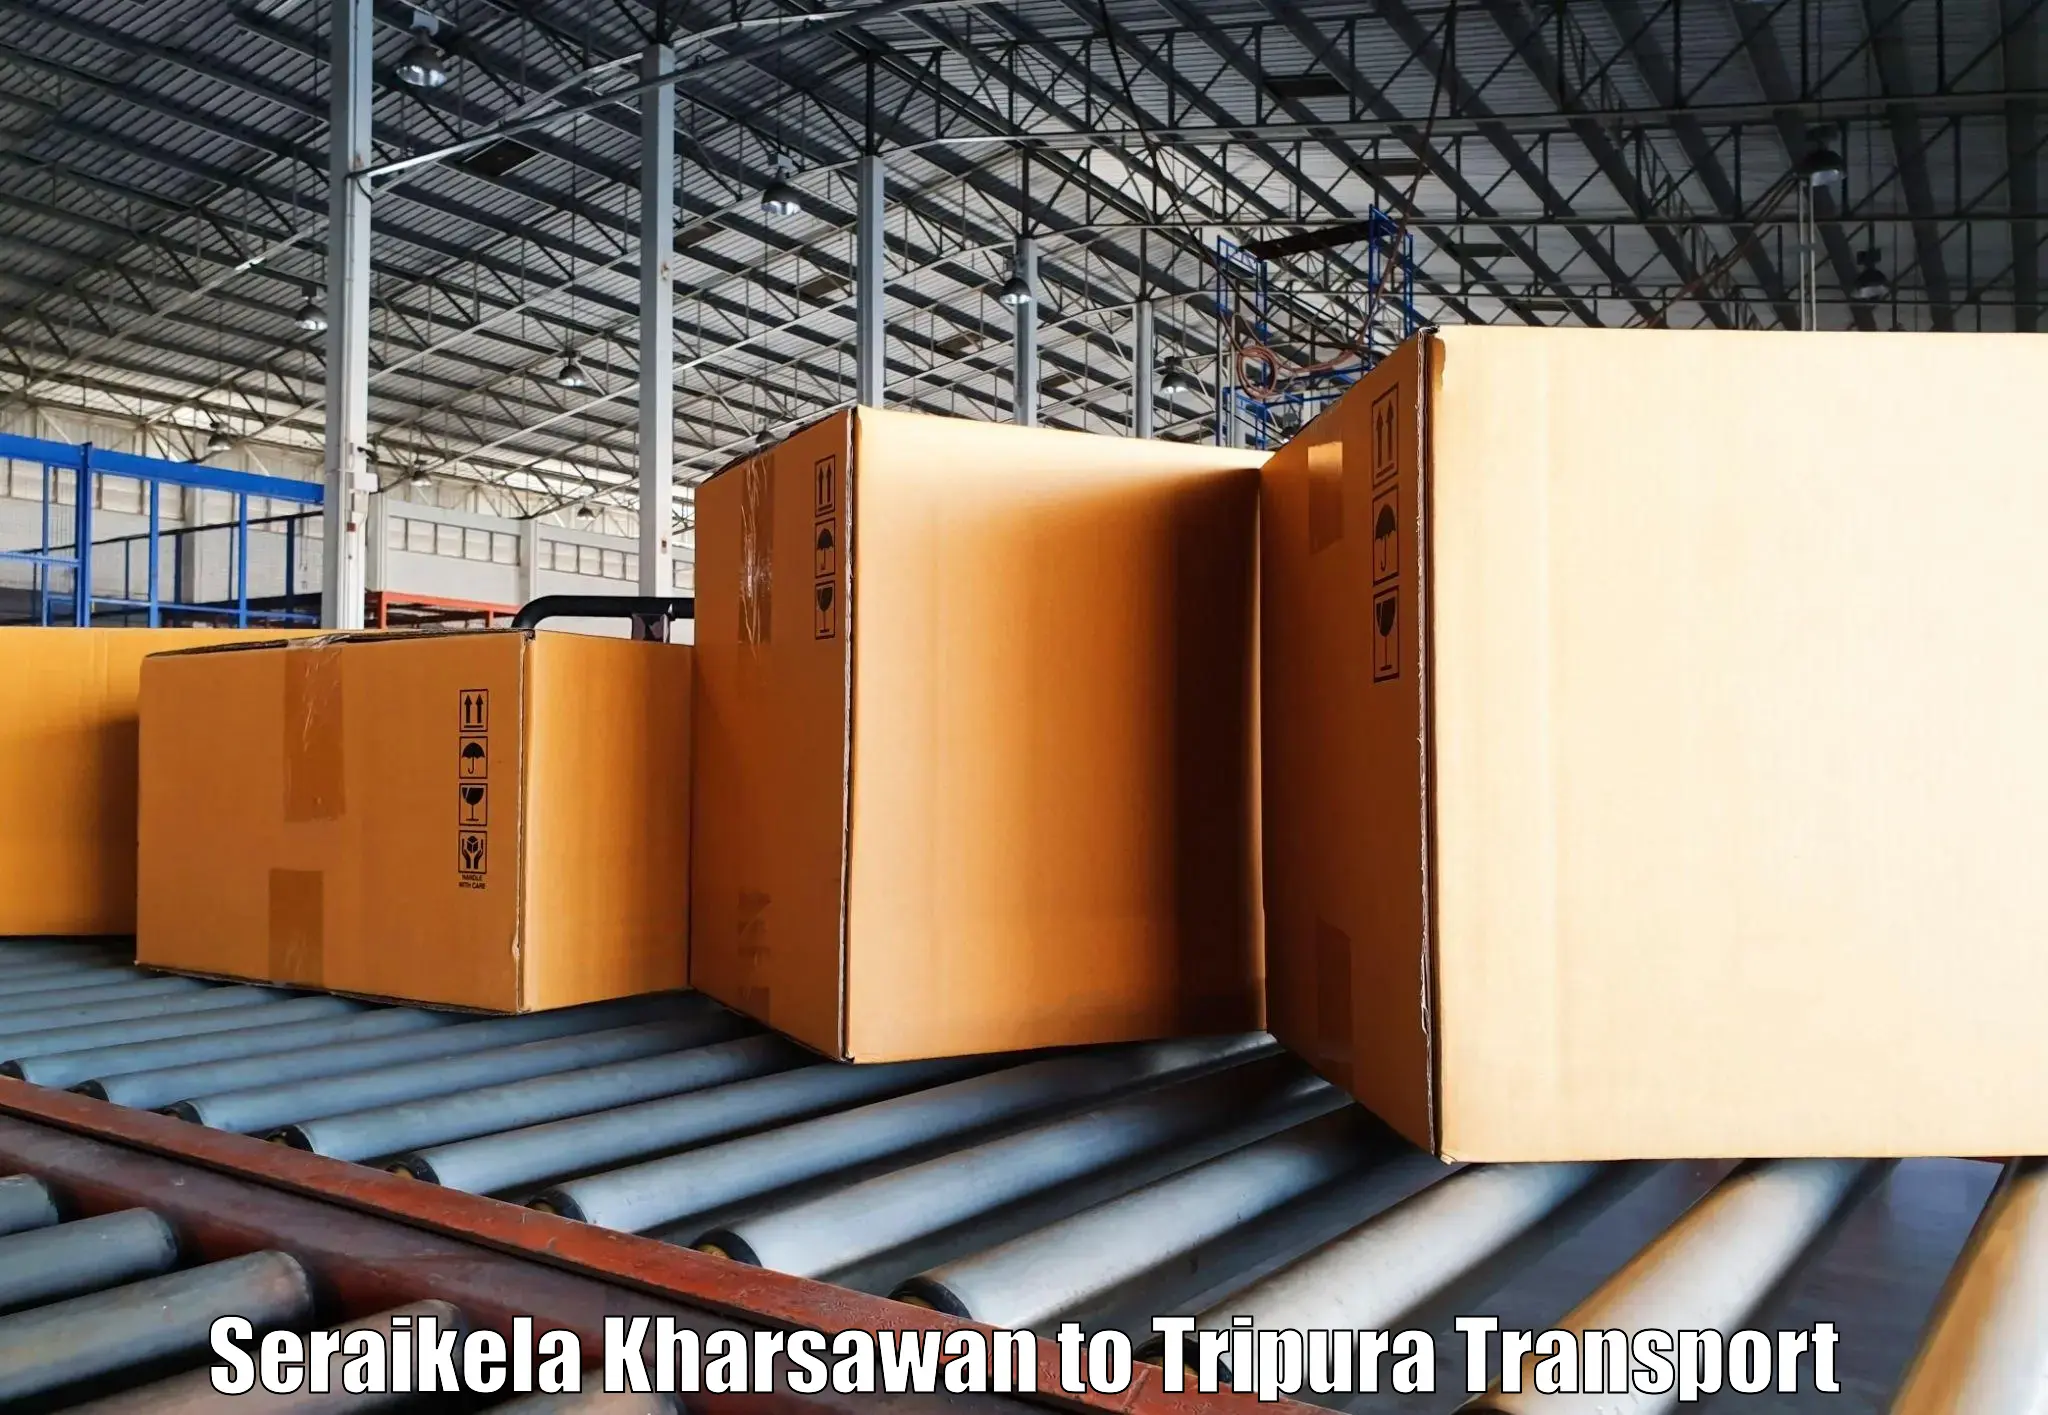 Commercial transport service Seraikela Kharsawan to Bishalgarh